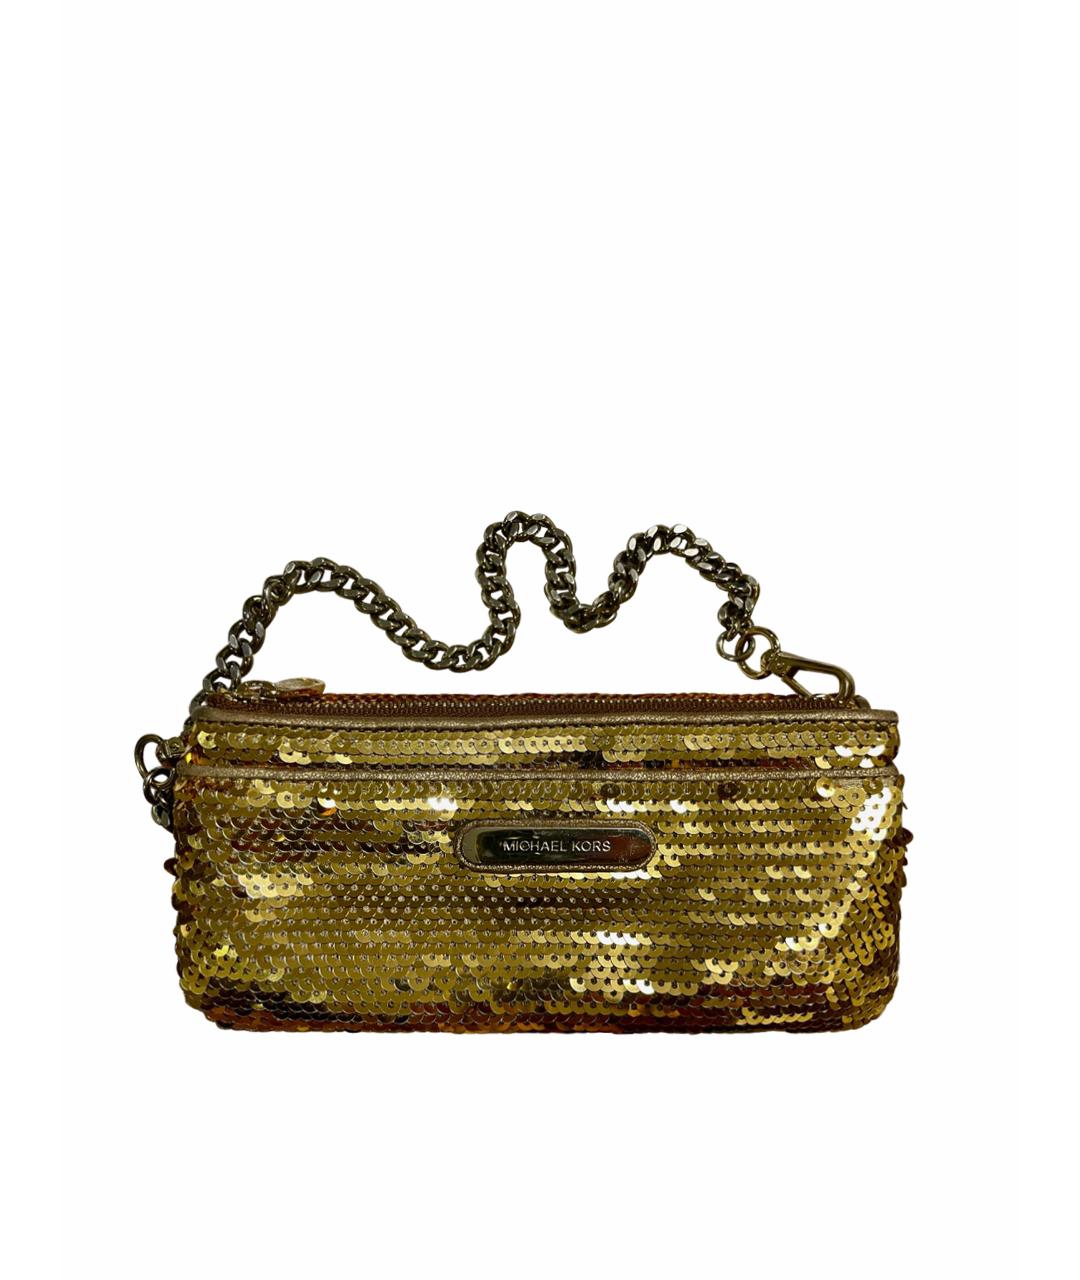 MICHAEL KORS Золотая сумка с короткими ручками, фото 1